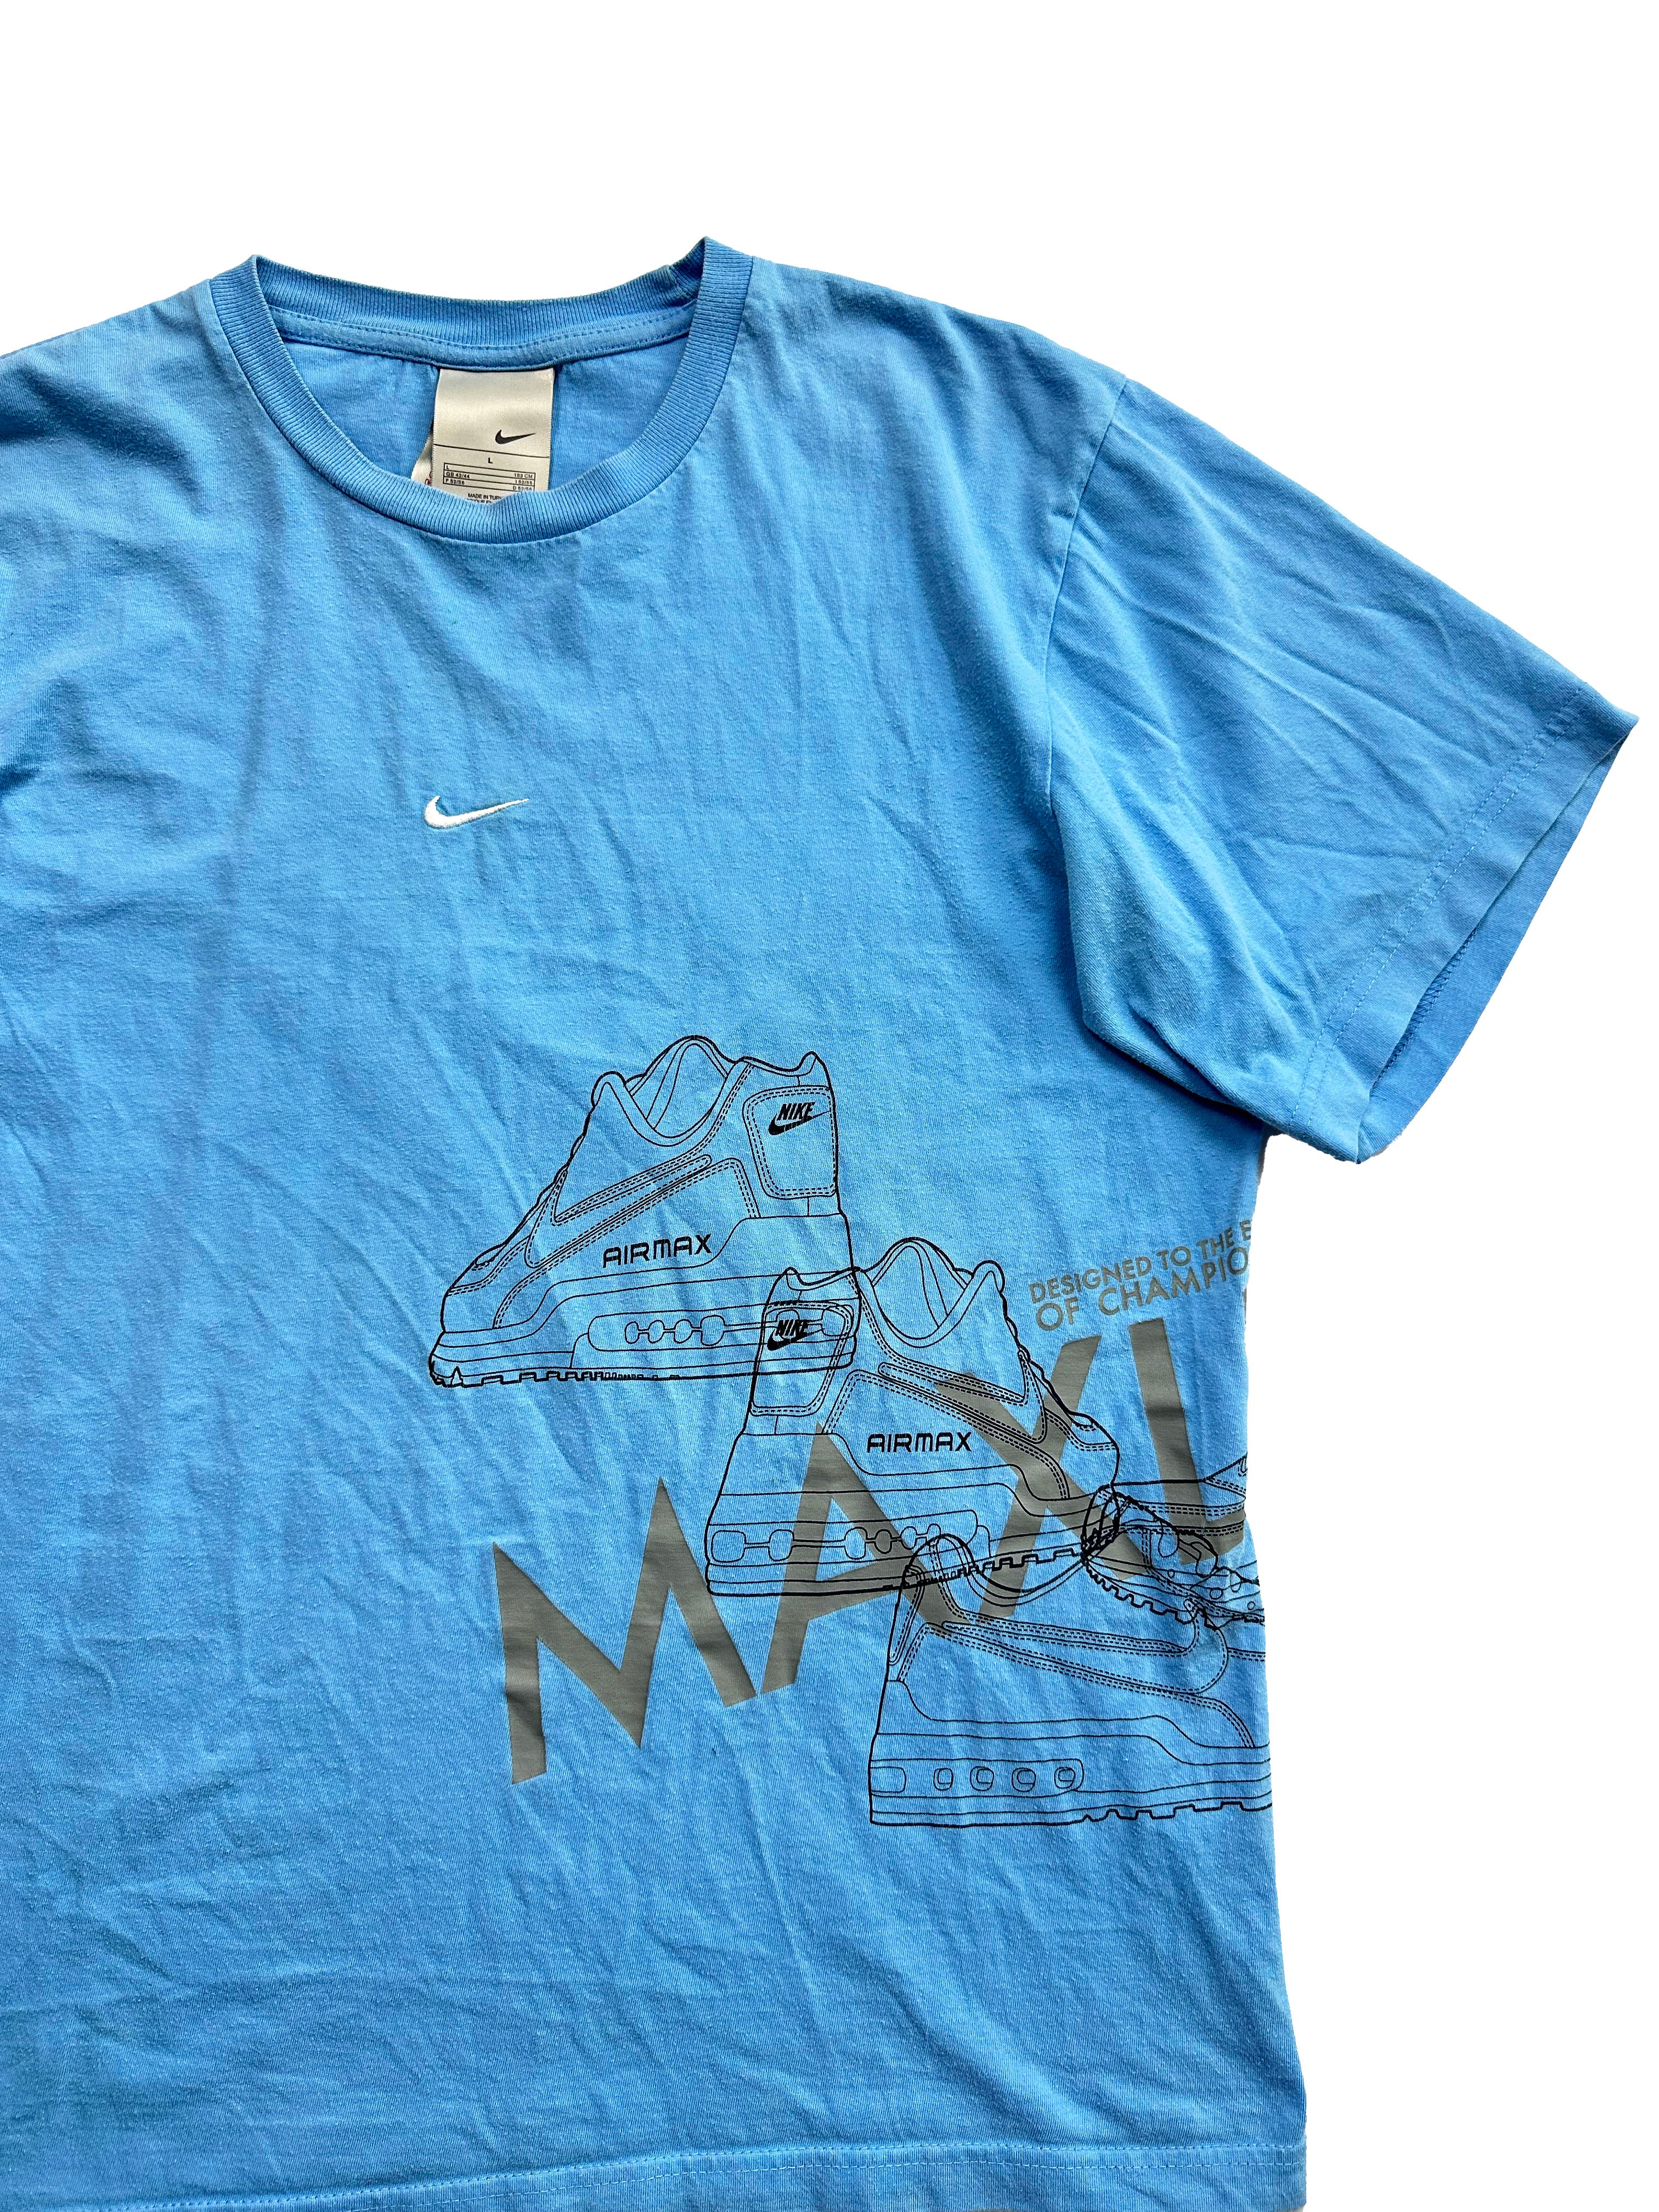 Nike Air Max LTD Baby Blue T-shirt 00's